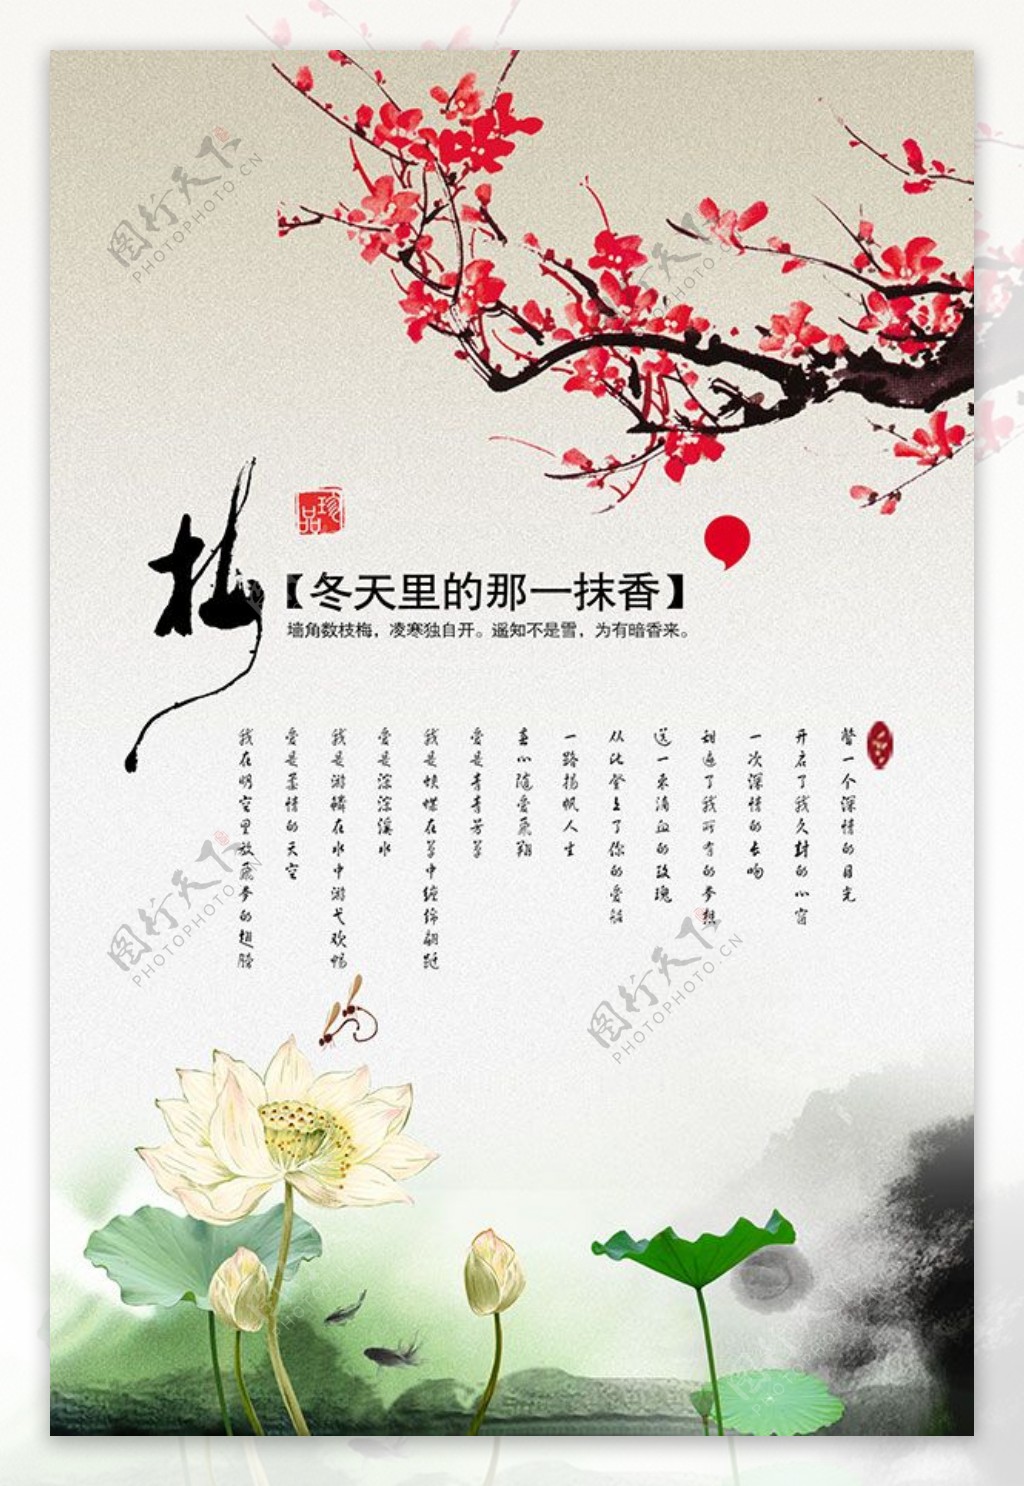 中国风水墨海报免费下载春节素材